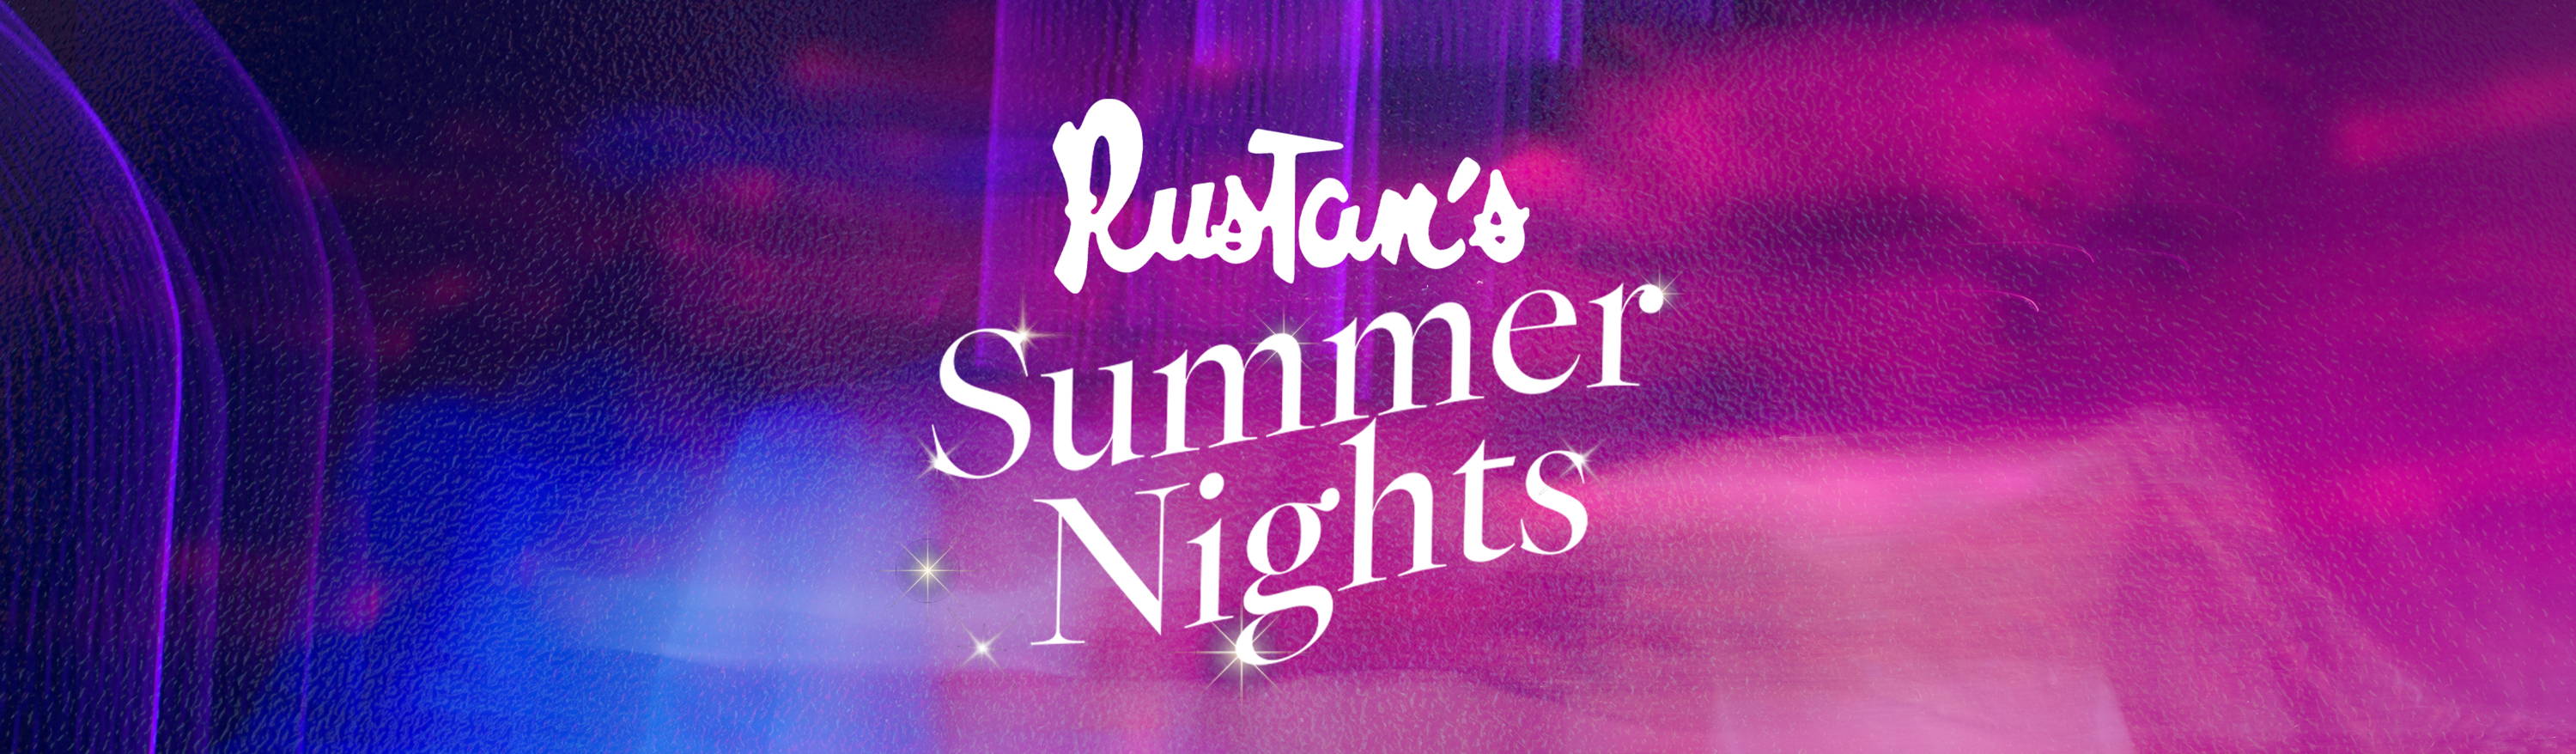 Rustan's Summer Nights: Events and Activities